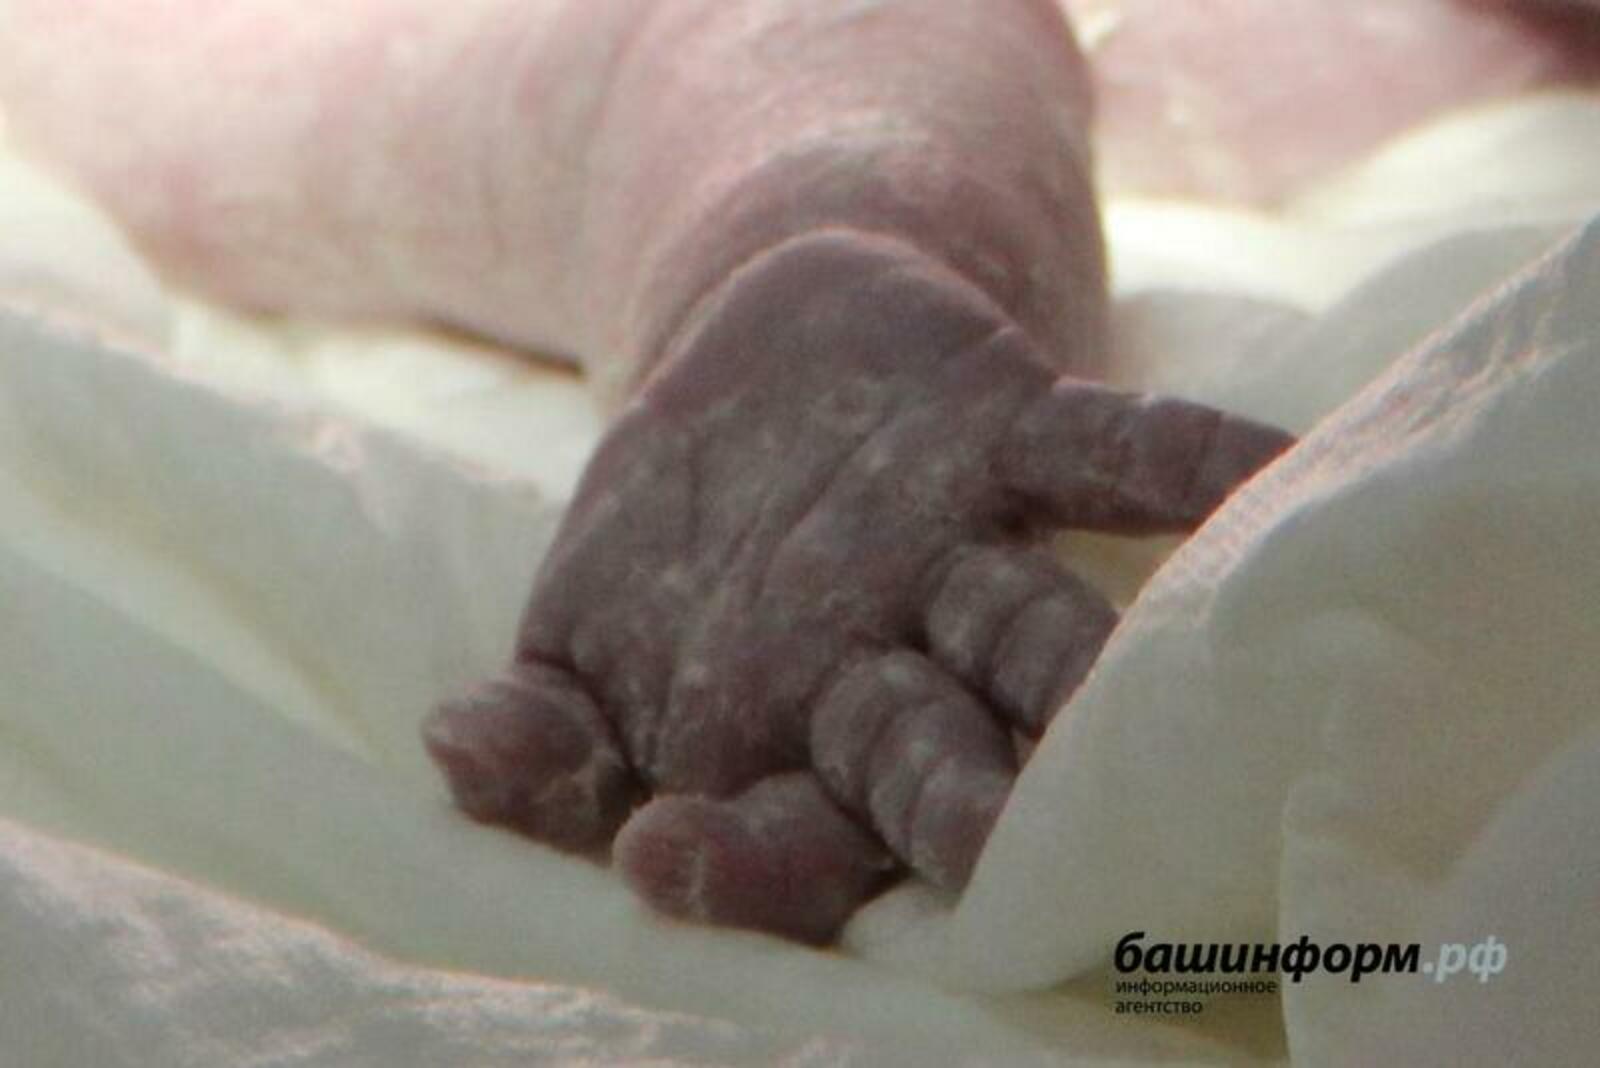 В Башкирии в мусороперерабатывающем комплексе нашли тело младенца